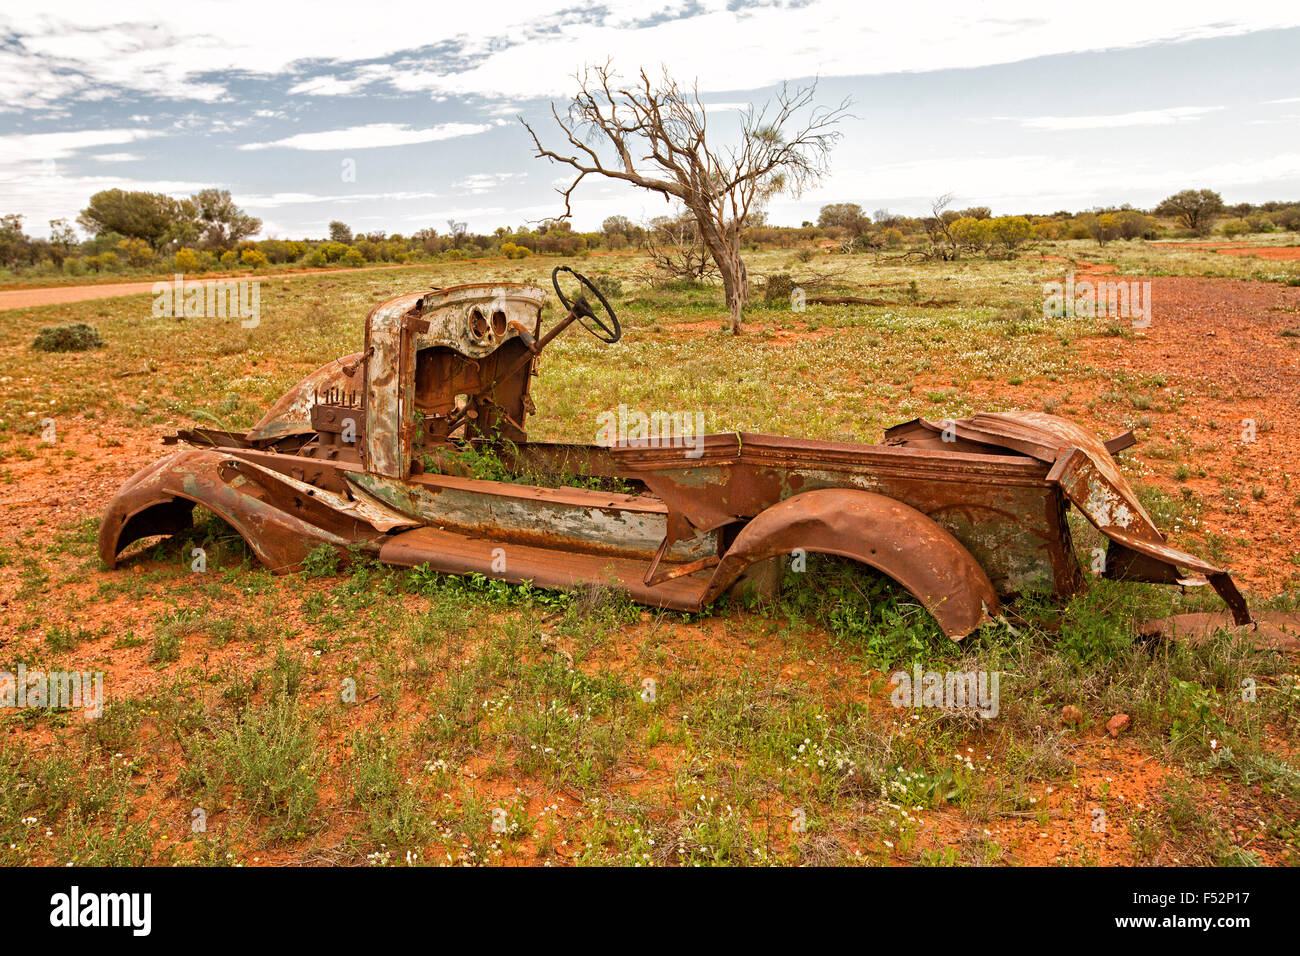 Reste der alten Nutzfahrzeug verrostet und verzichtet auf rotem australischen Outback Ebenen sommersprossige mit niedriger Vegetation nach Regenfällen Stockfoto